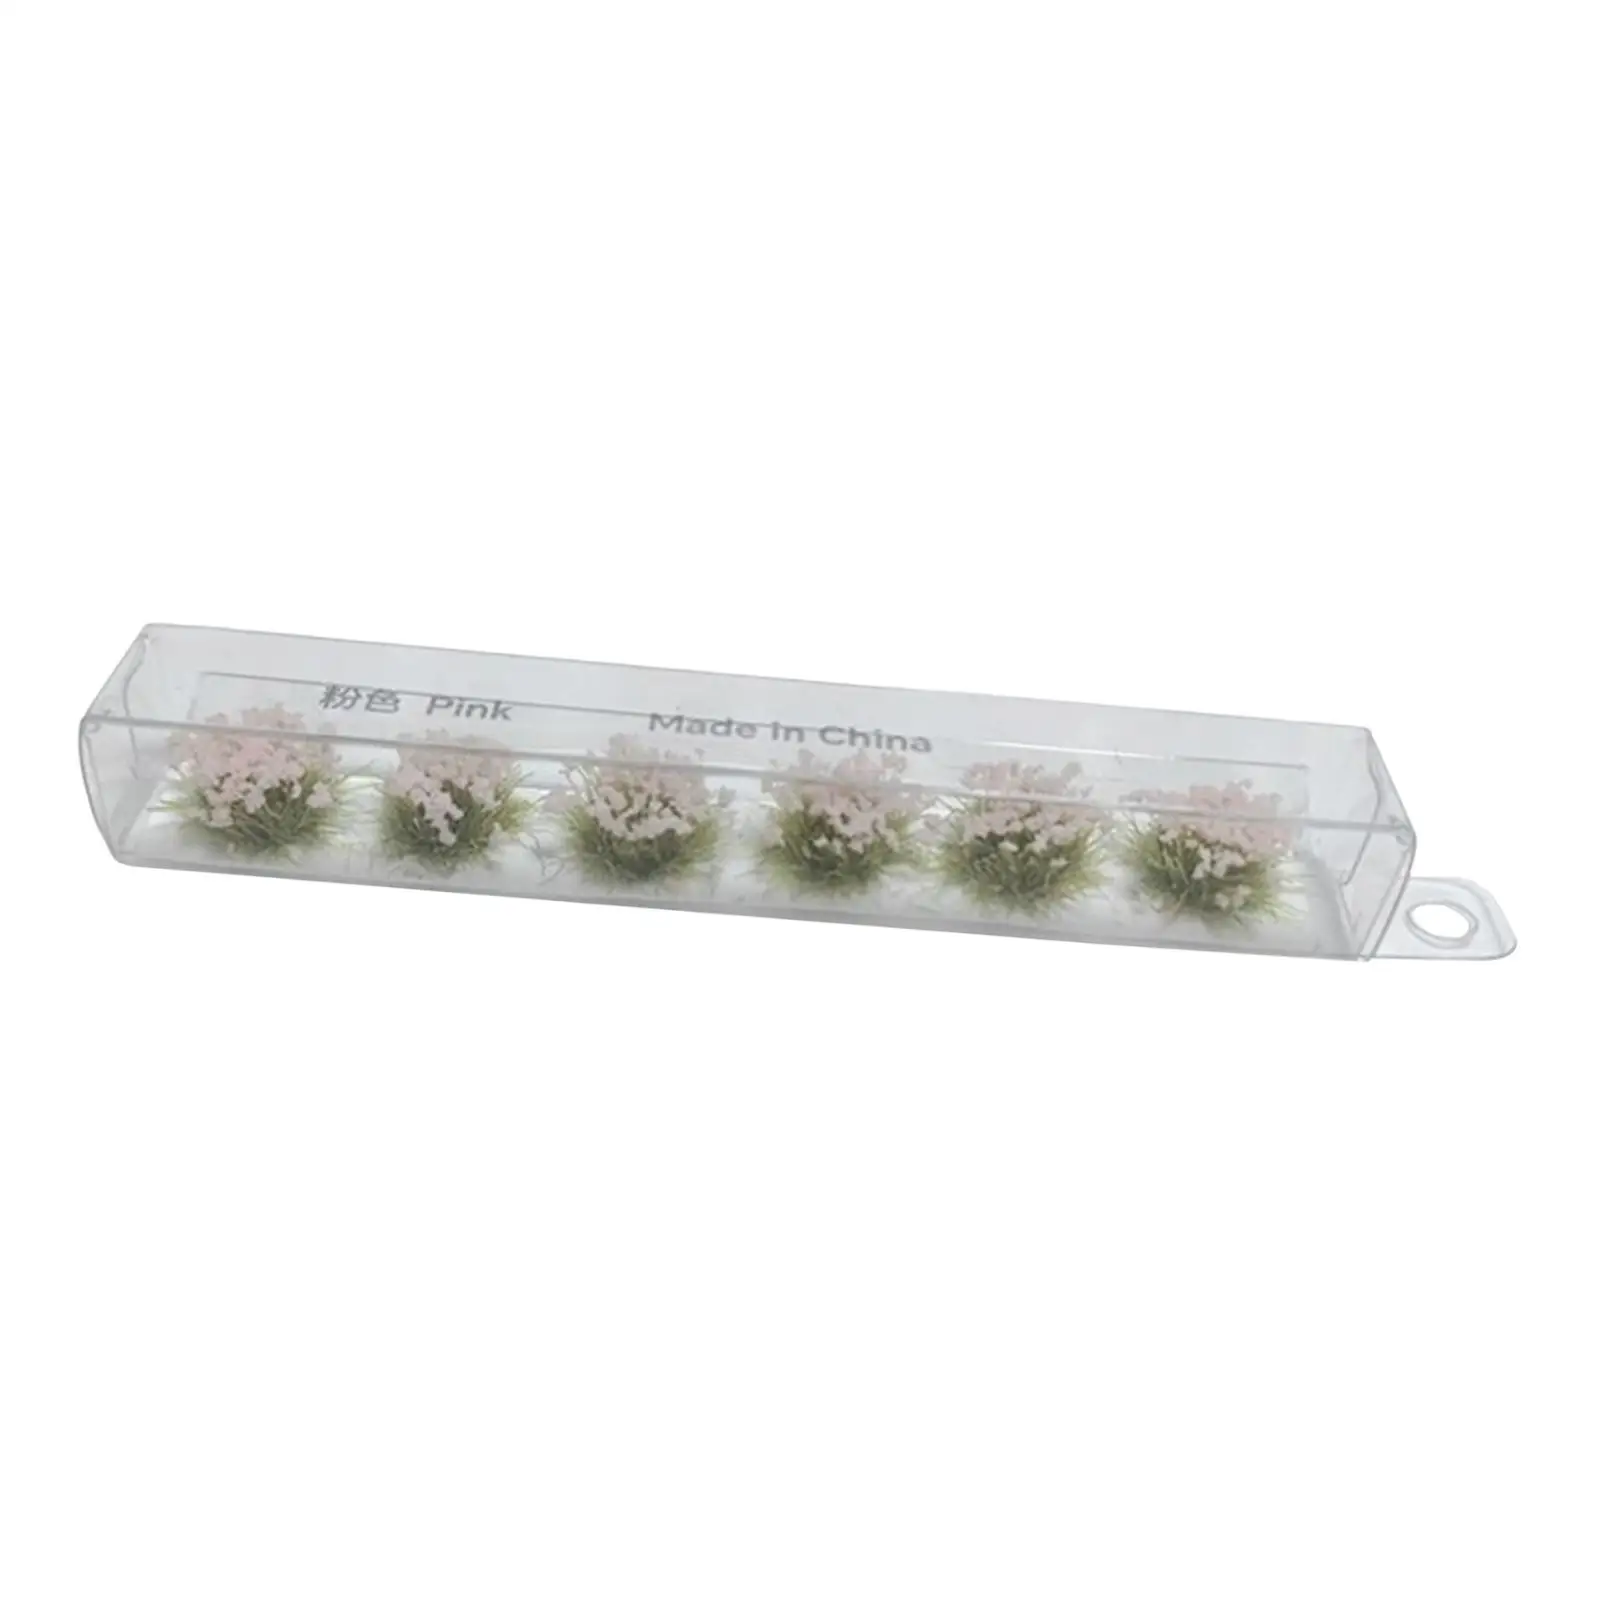 Railway Artificial Grass Grass Tufts Miniature Flower Cluster Miniature Grass Model for Railway Decor